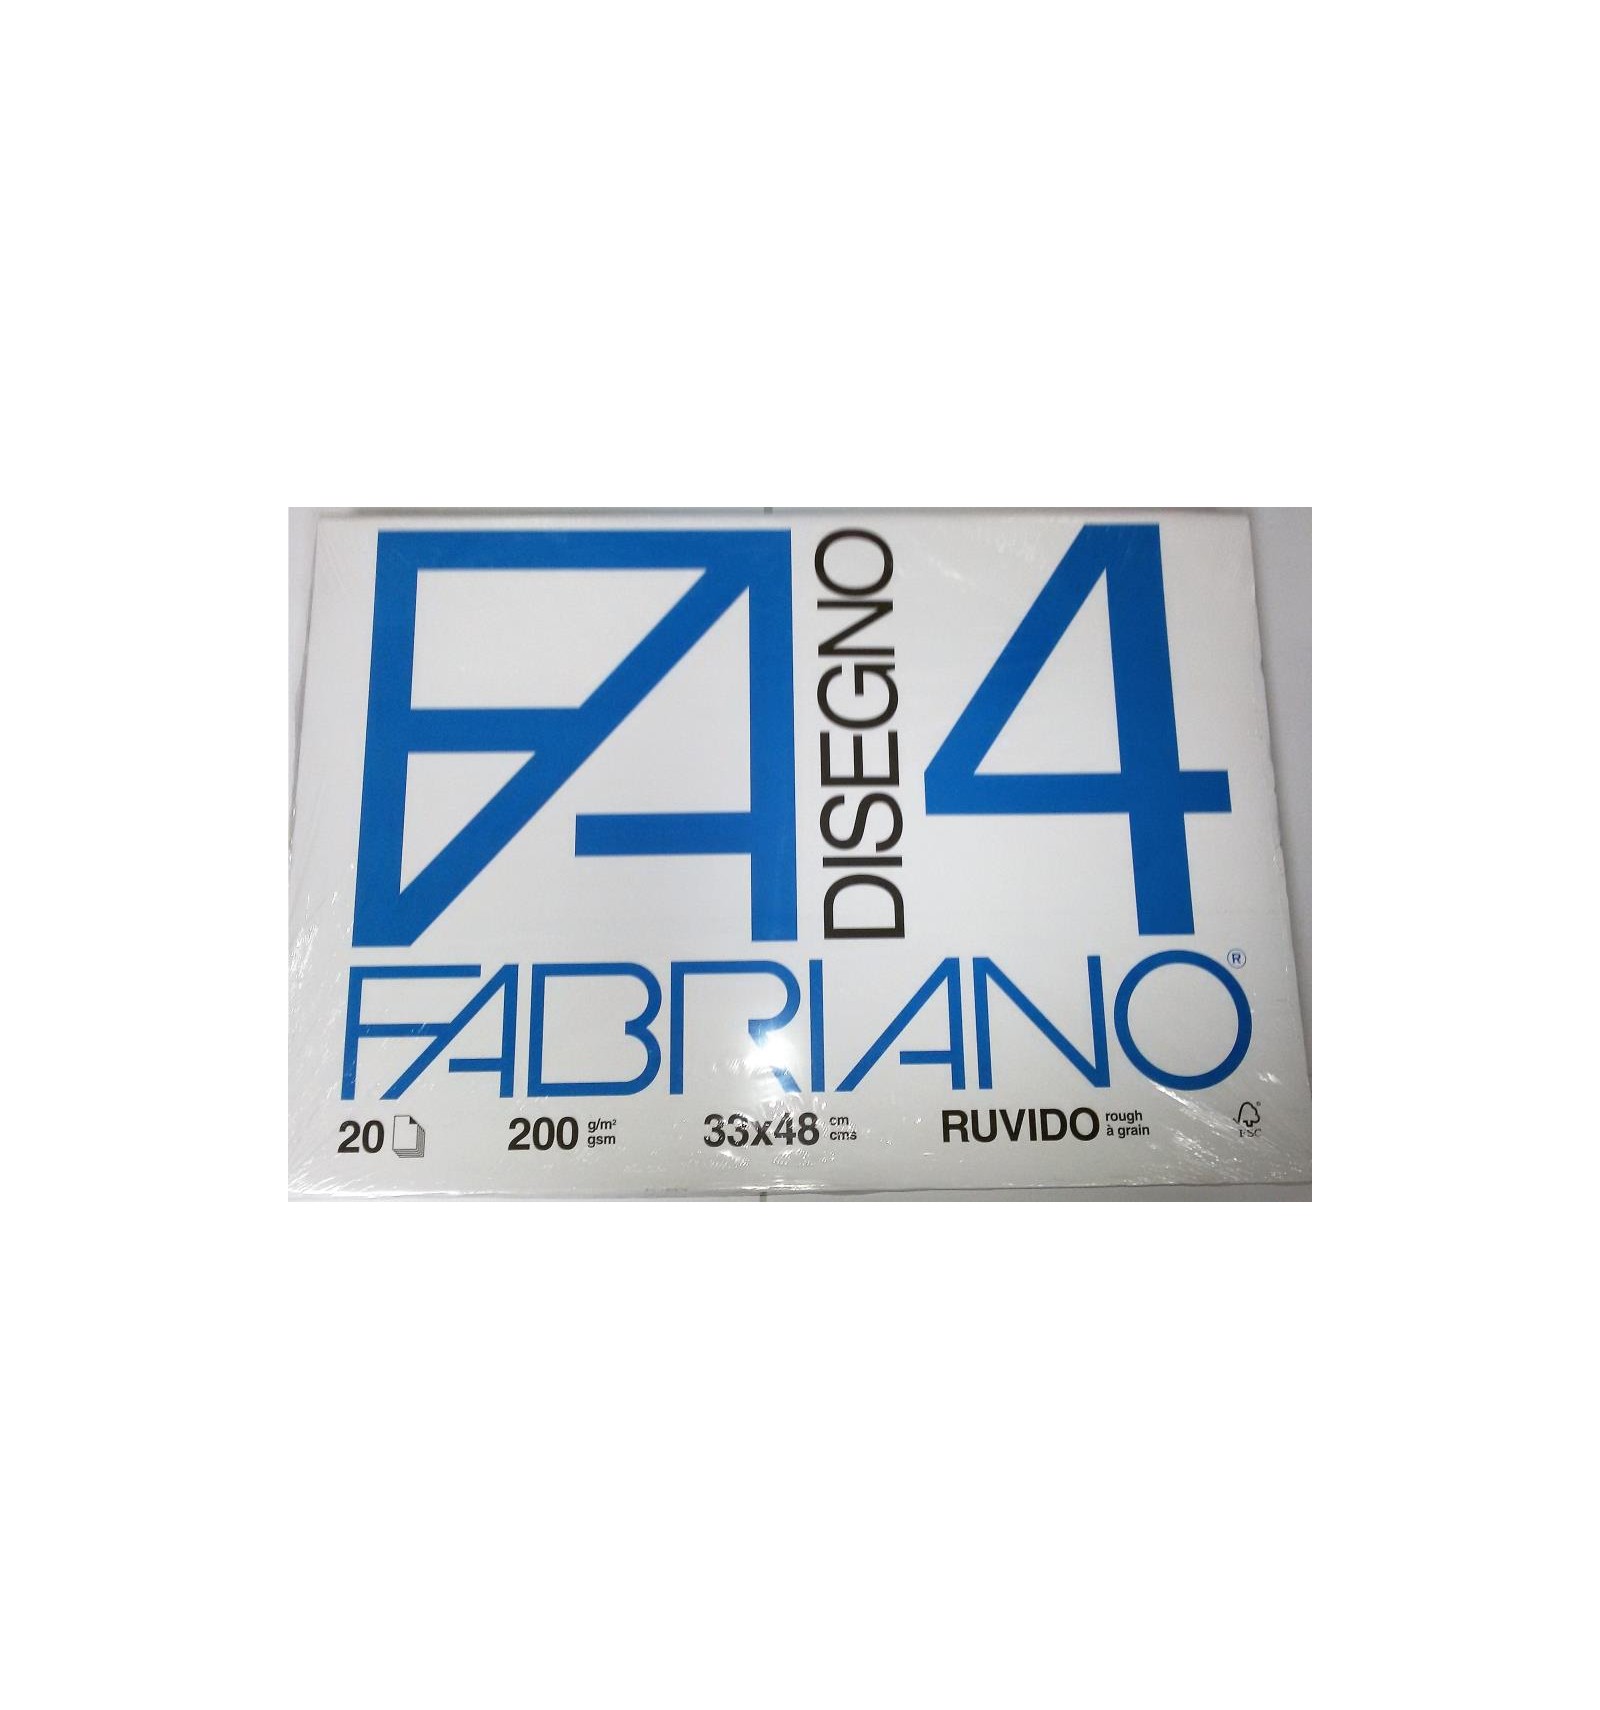 FABRIANO F4 RUVIDO 33x48